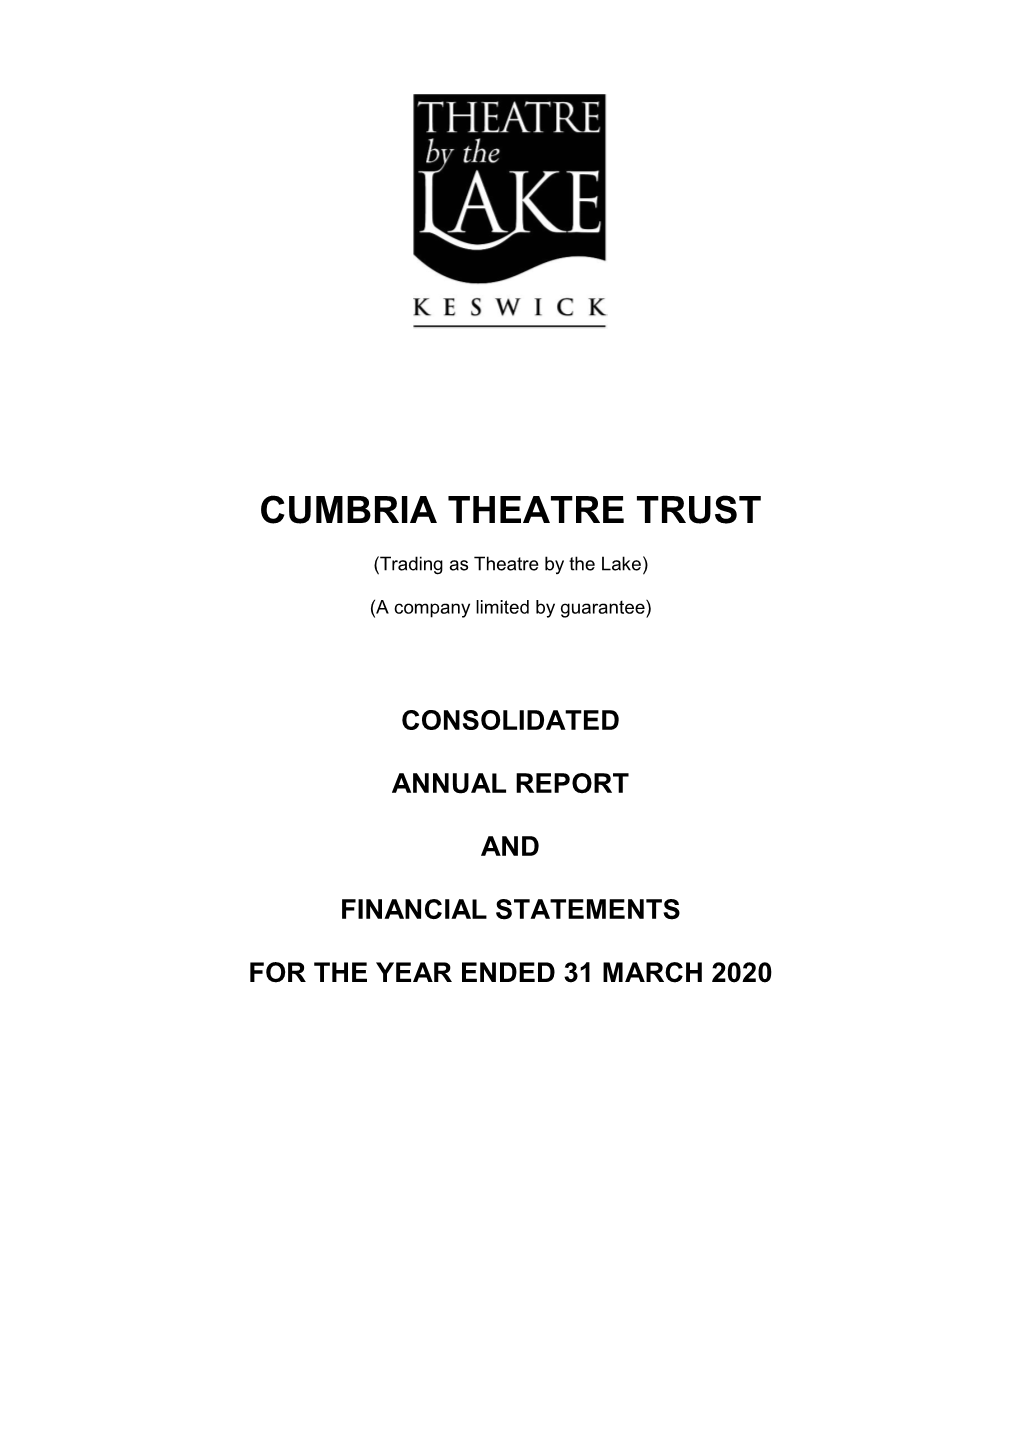 Cumbria Theatre Trust